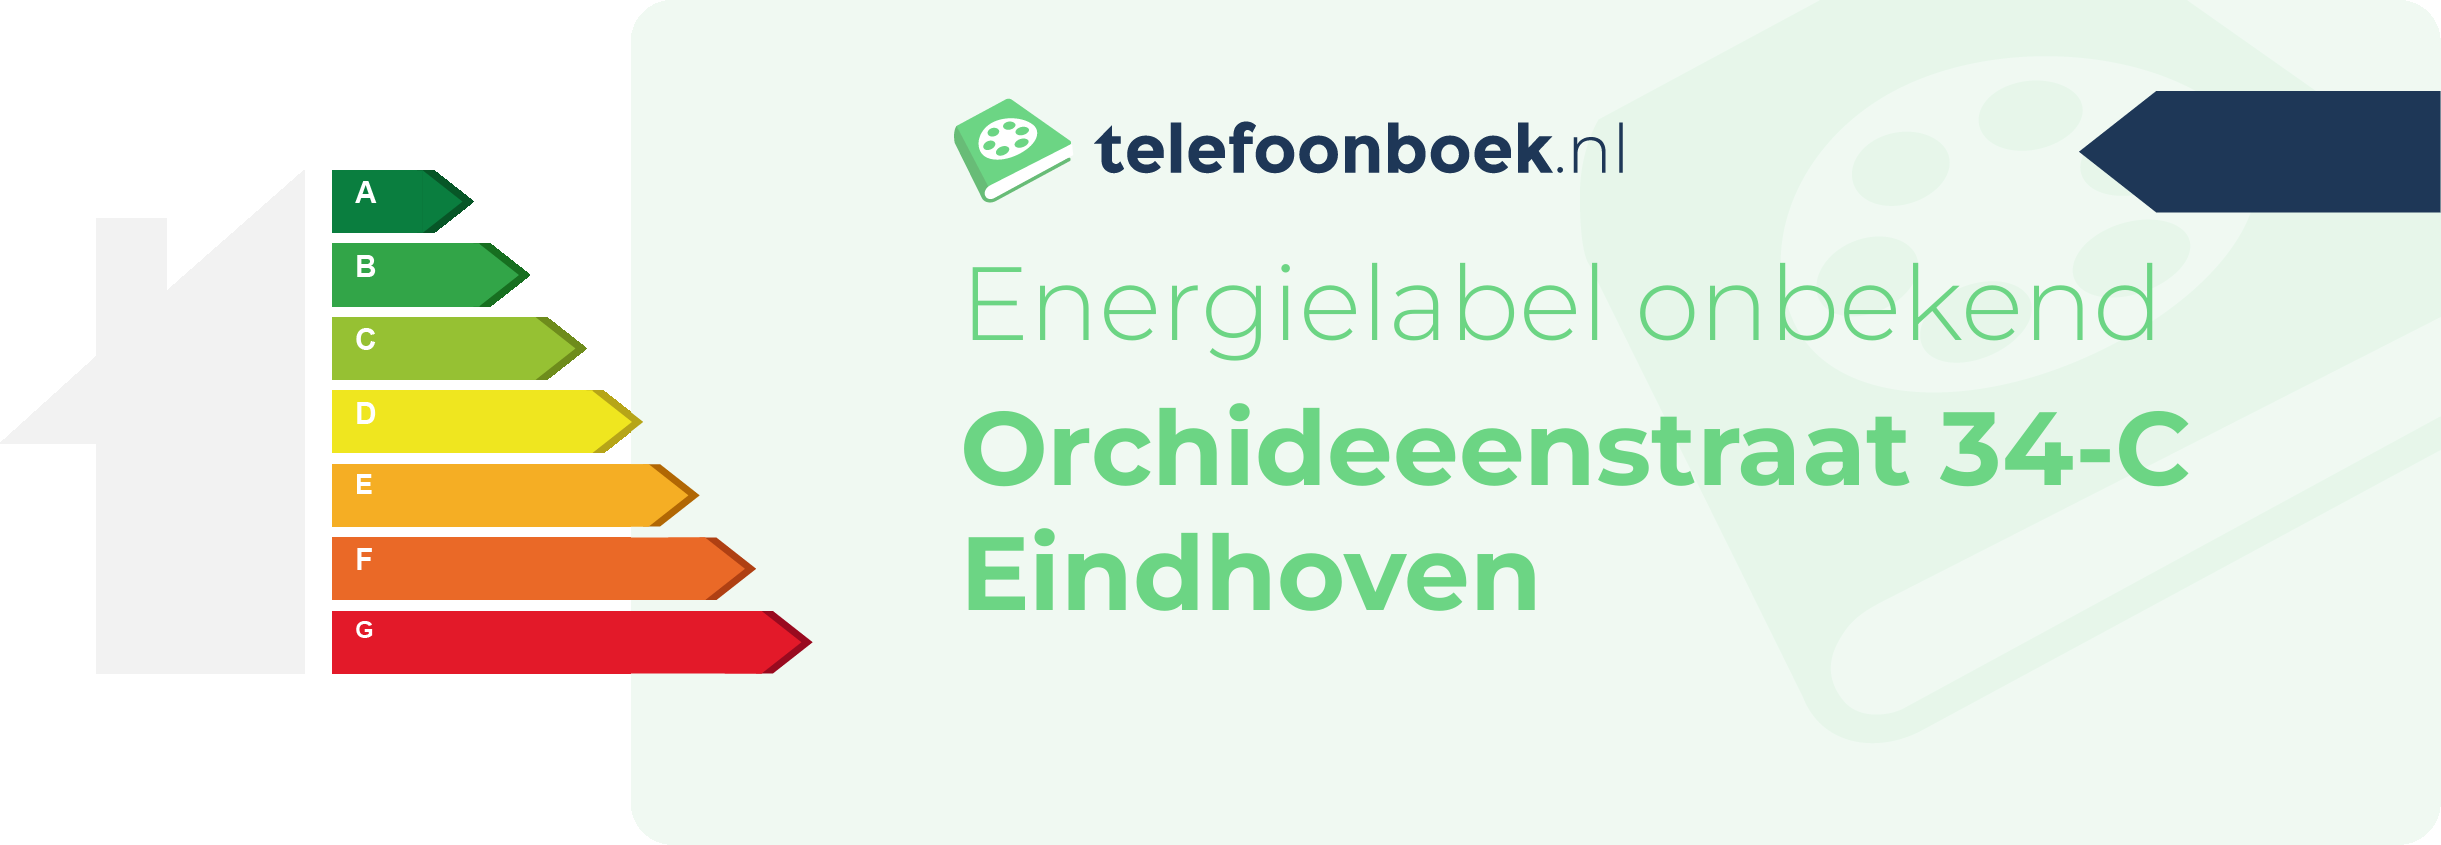 Energielabel Orchideeenstraat 34-C Eindhoven